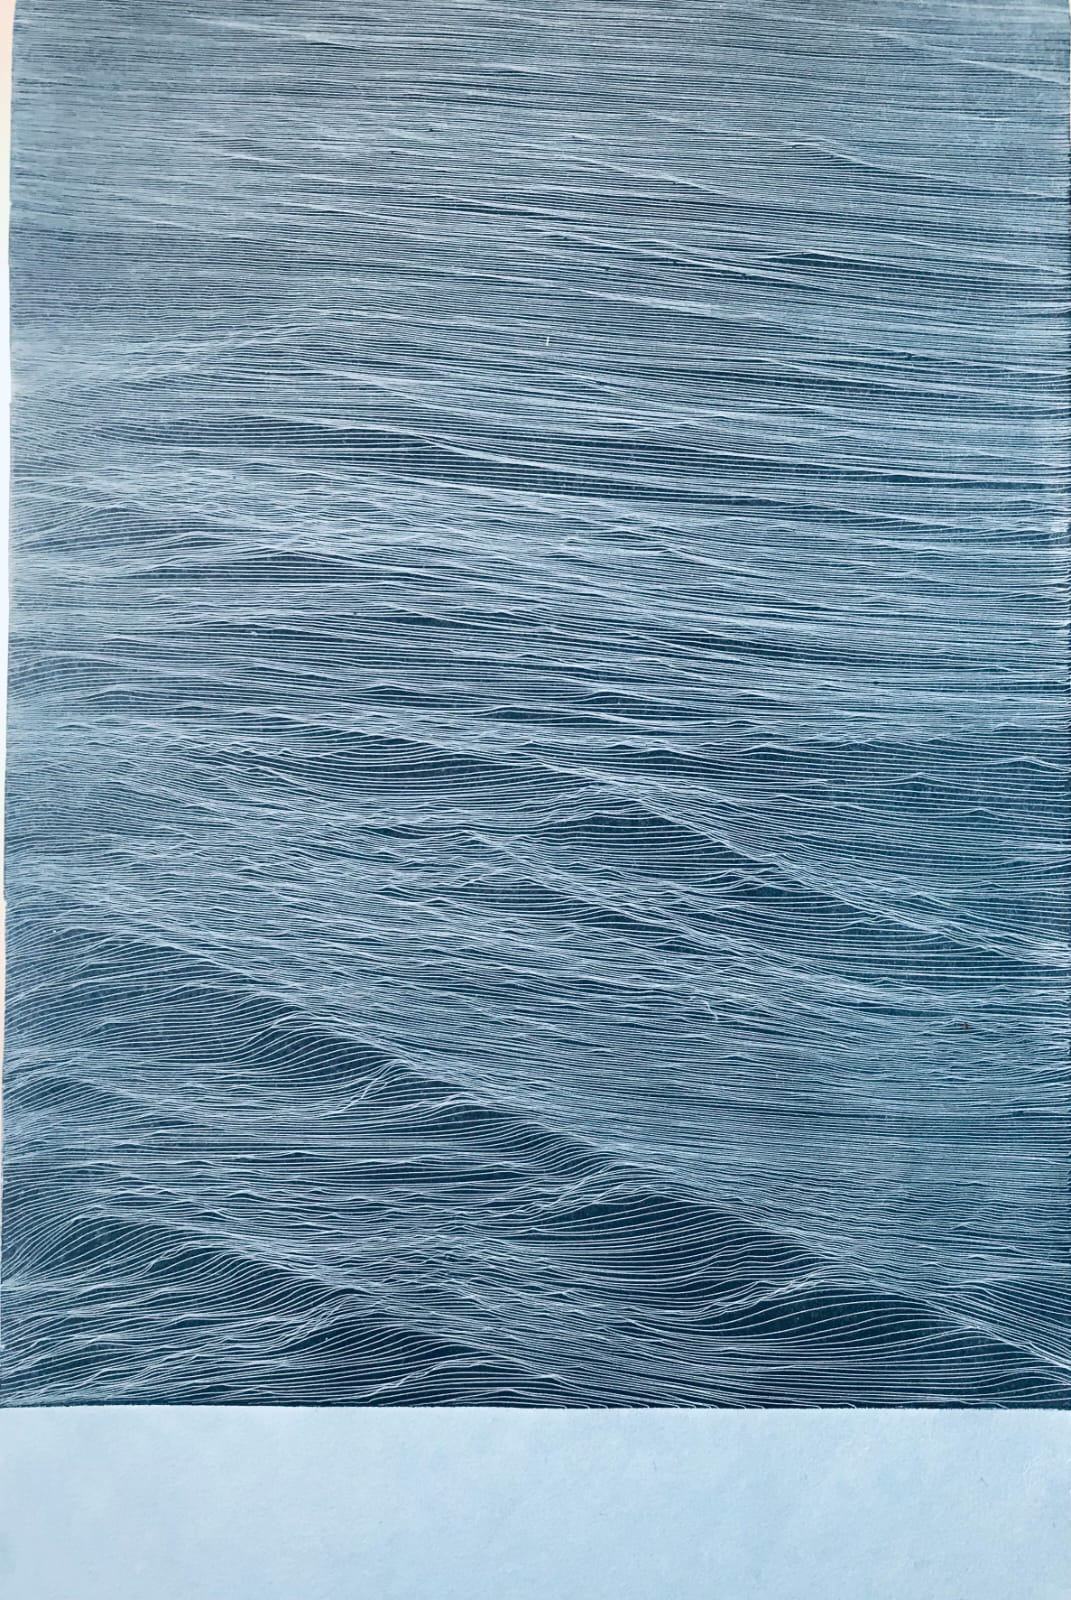 JE Mar Negro Azul 2022 Ed PA.25 37x24 cm Etching on Hahnemuhle 350 gr paper Pigment Gallery Galería de Arte en Barcelona Mar Negro Azul. Edición de 25